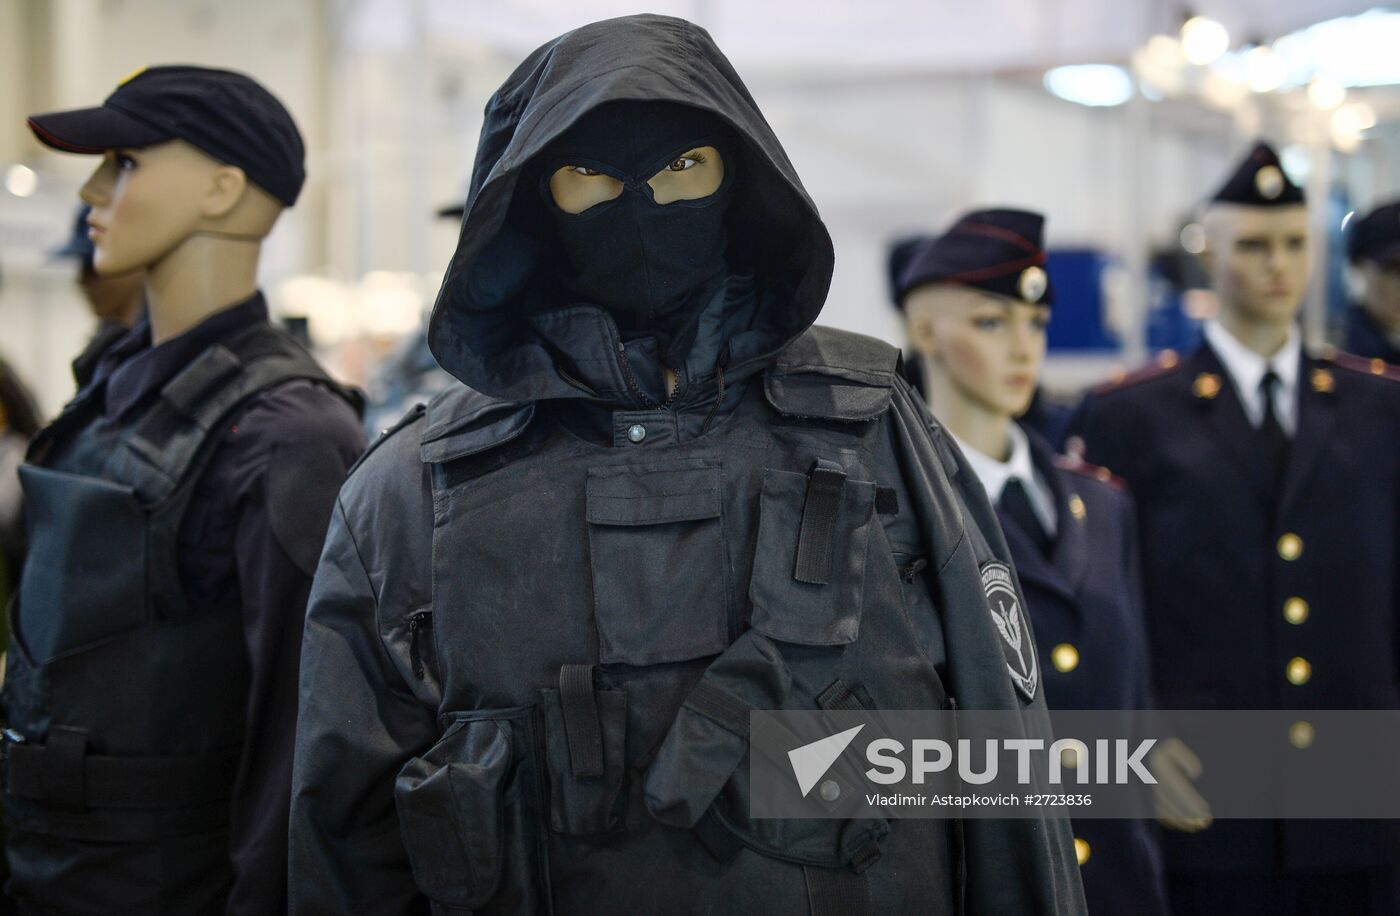 Interpolitex, international homeland security exhibition